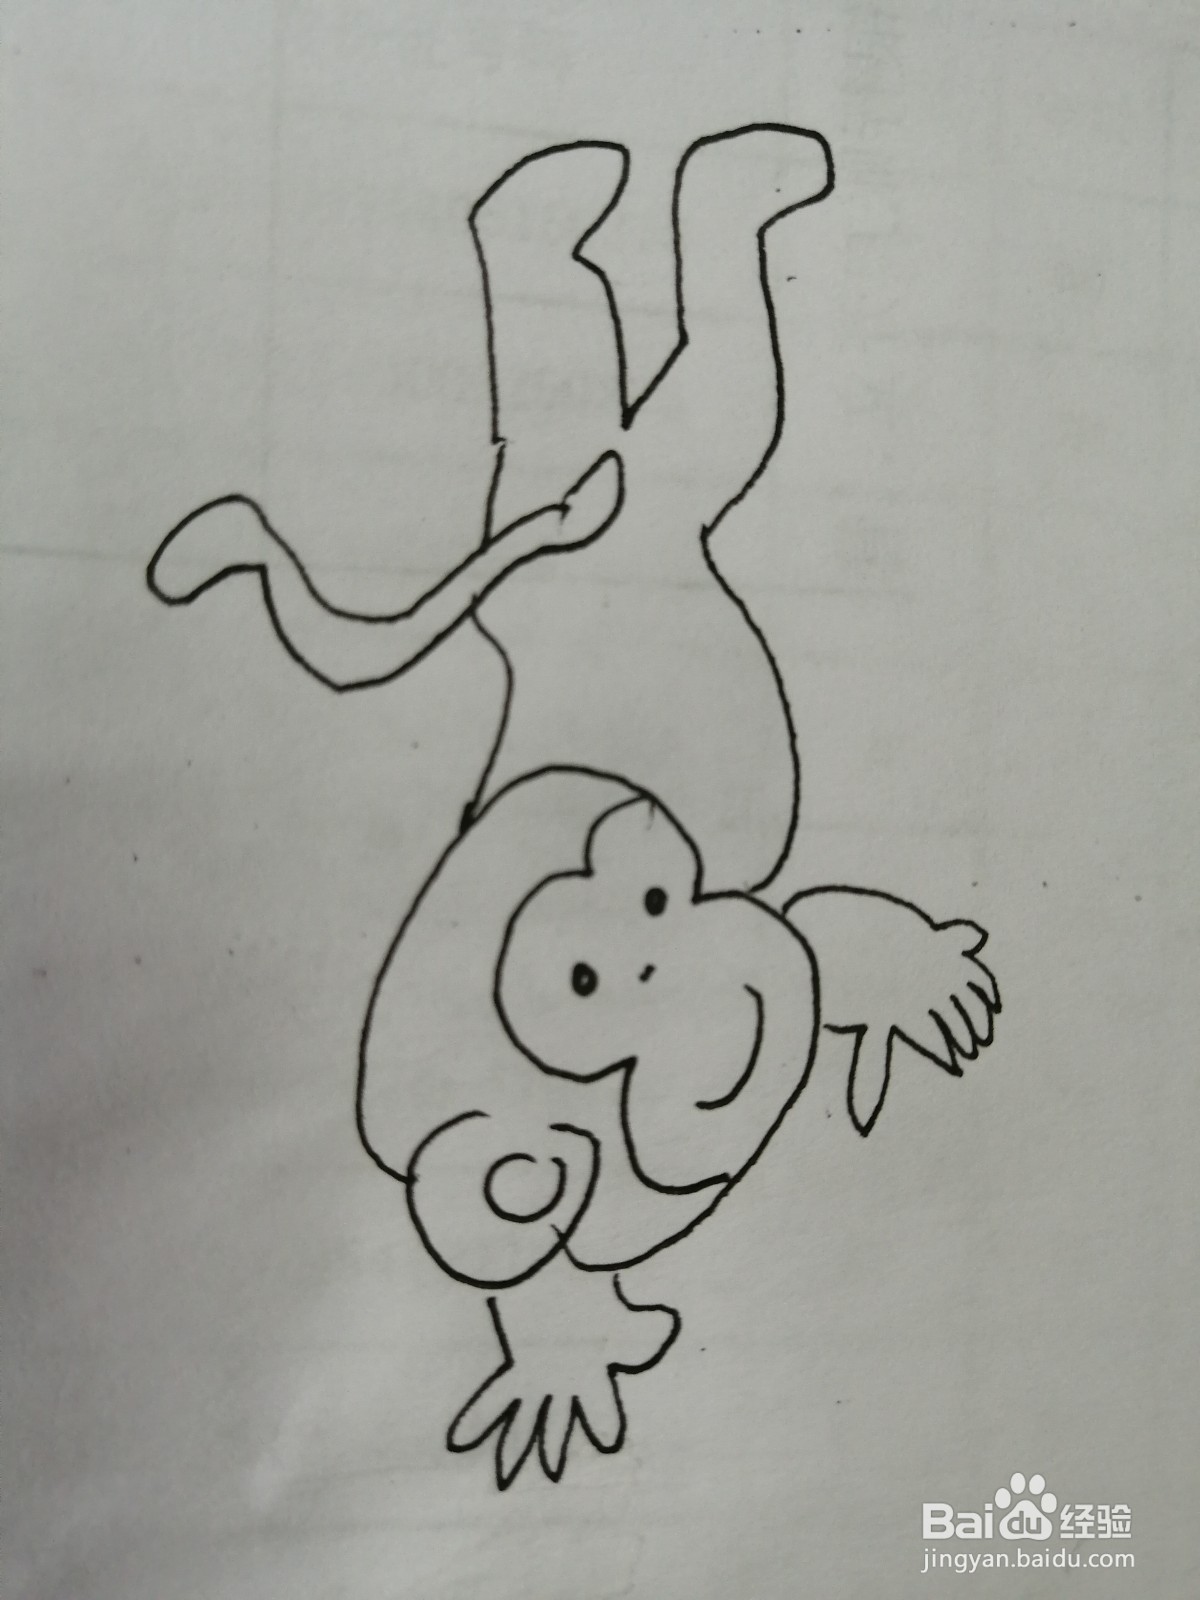 <b>倒立的小猴子怎么画</b>